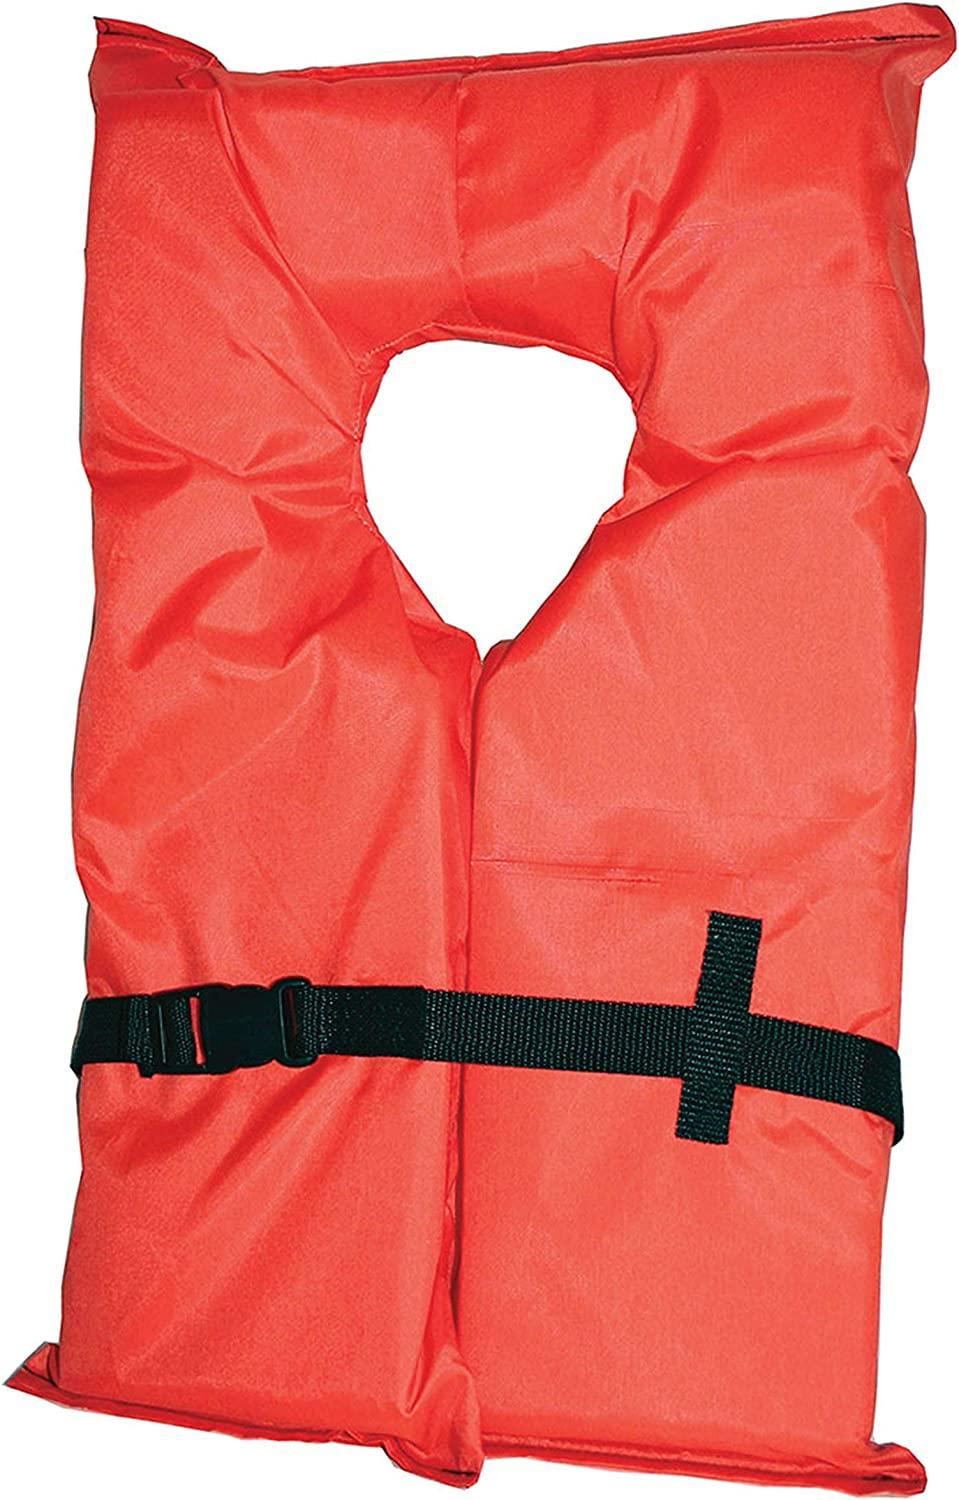  Kent Onyx Adult Oversize/Super Largetype 2 Uscg Approved Life Jacket, Orange (102000- 200- 005- 12)